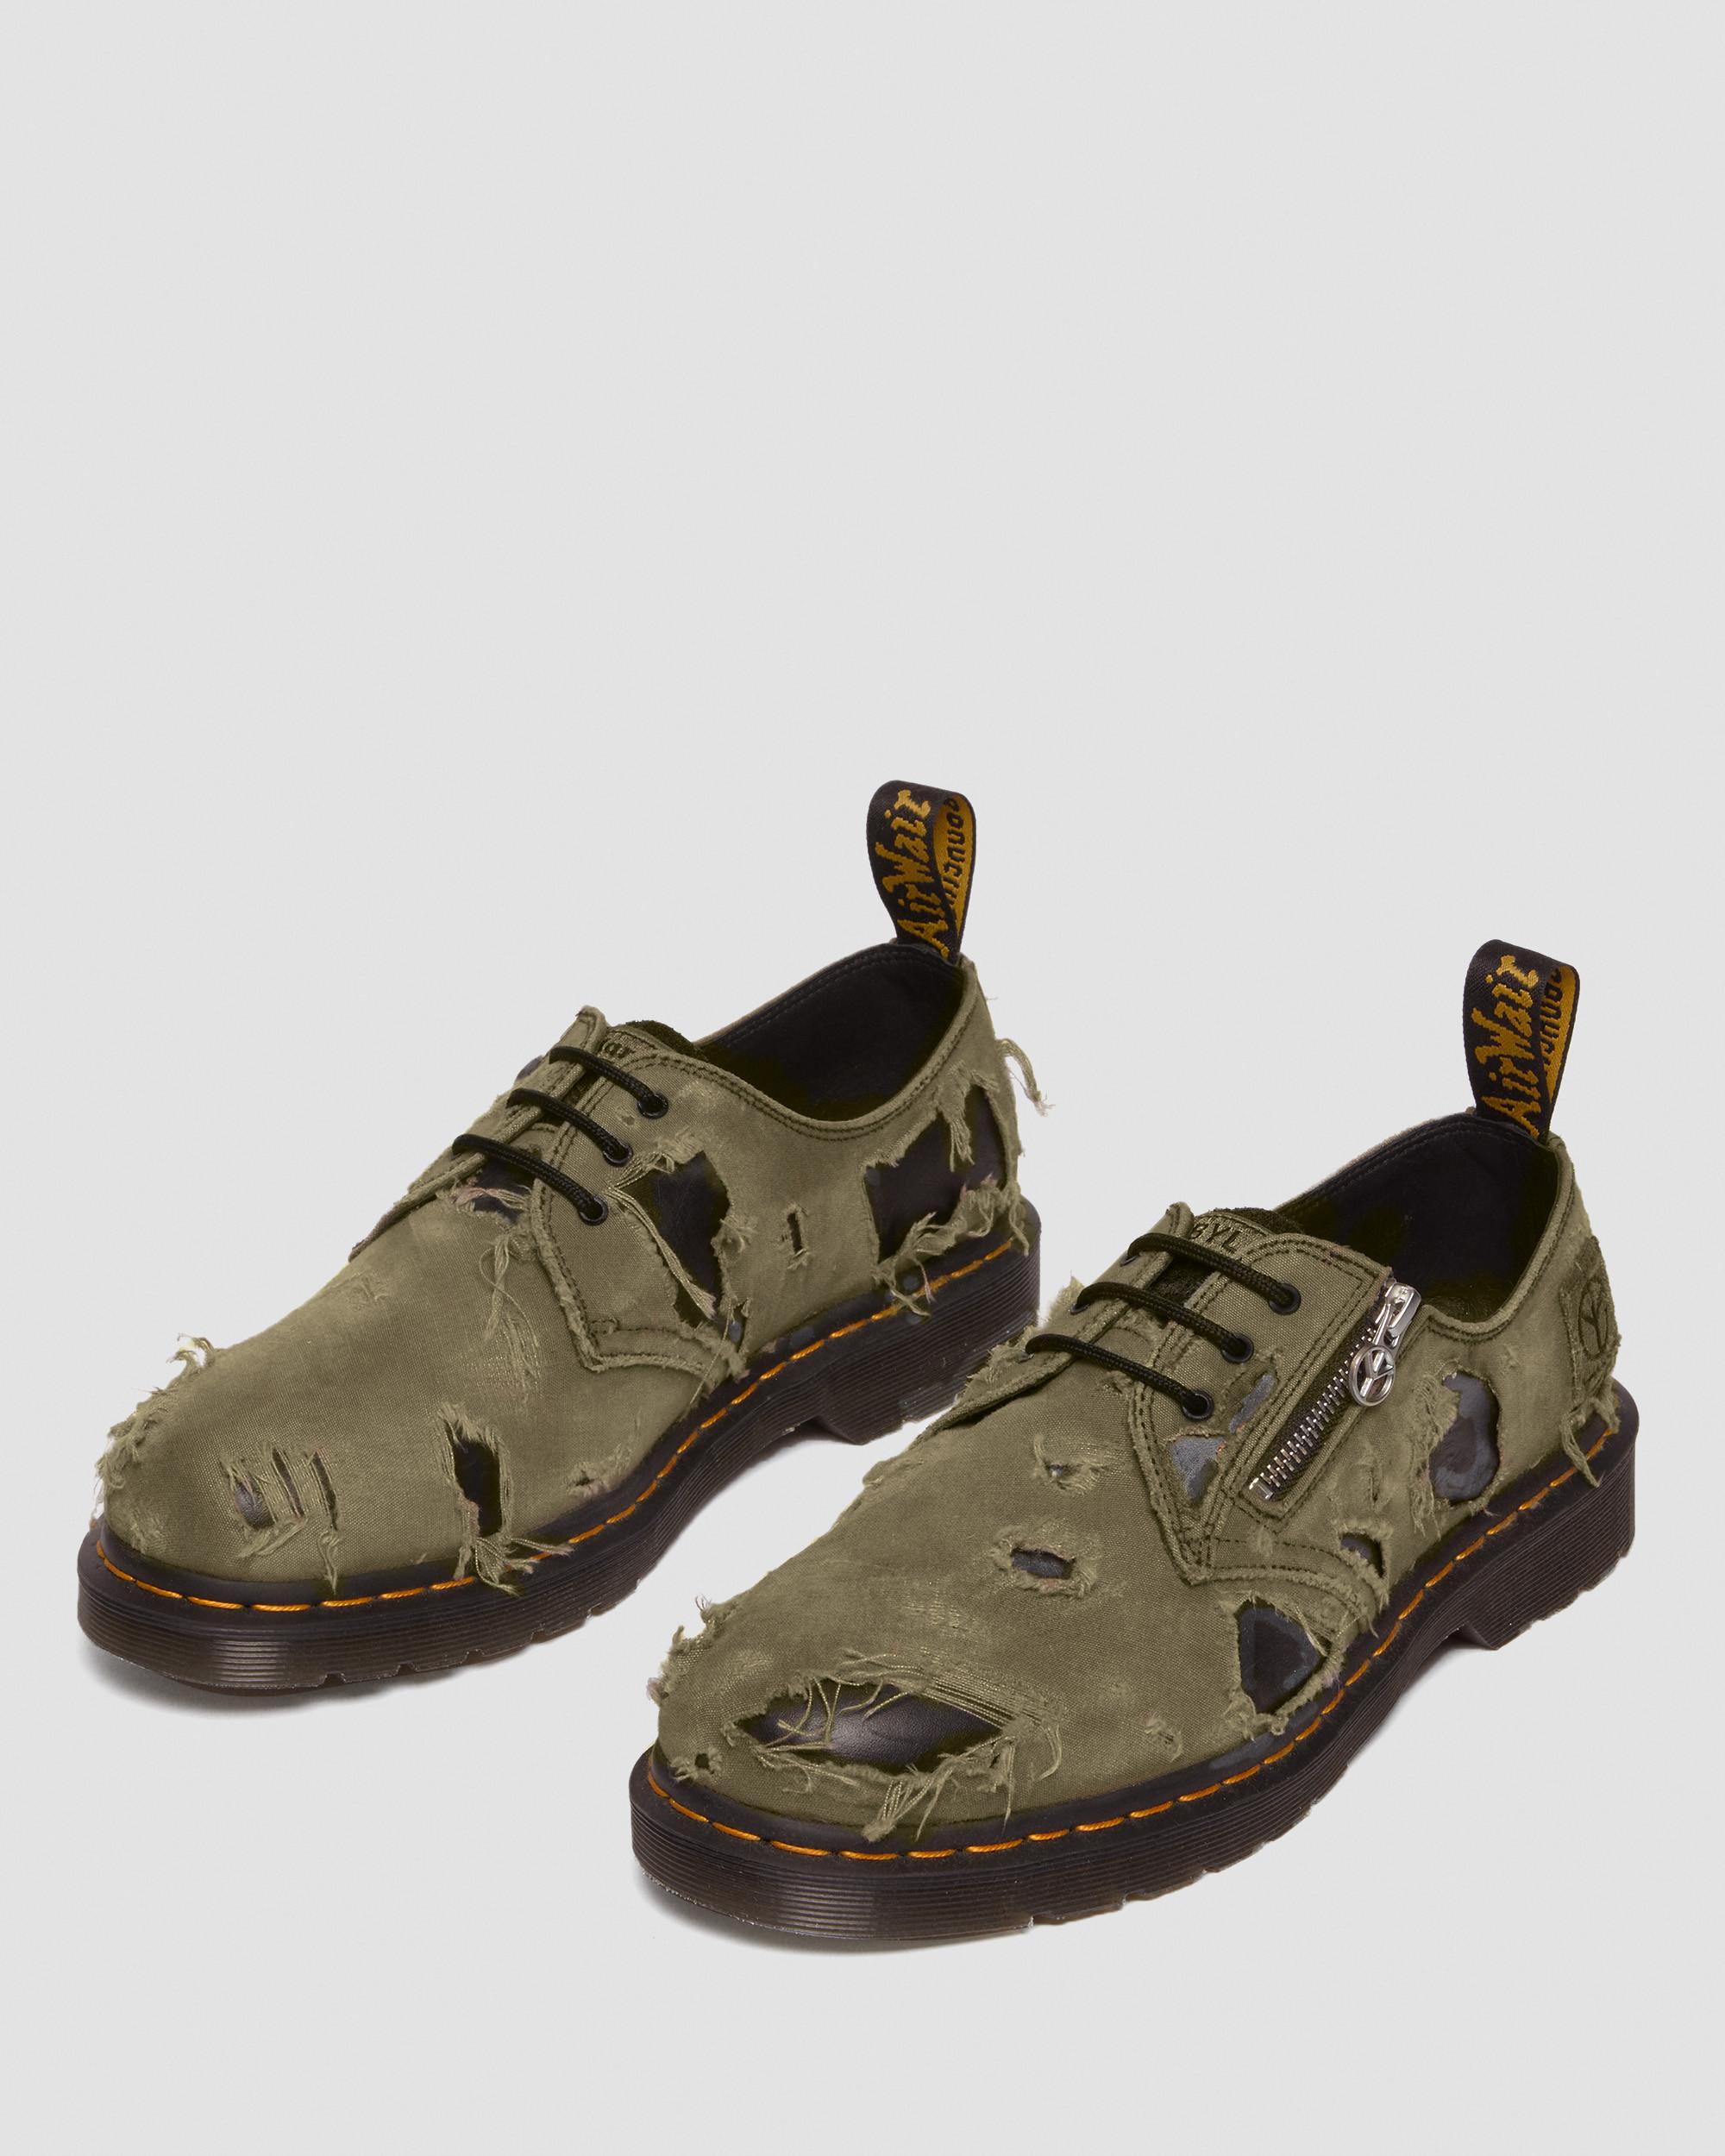 1461 Babylon Canvas Leather Shoes1461 Babylon Canvas Leather Shoes Dr. Martens